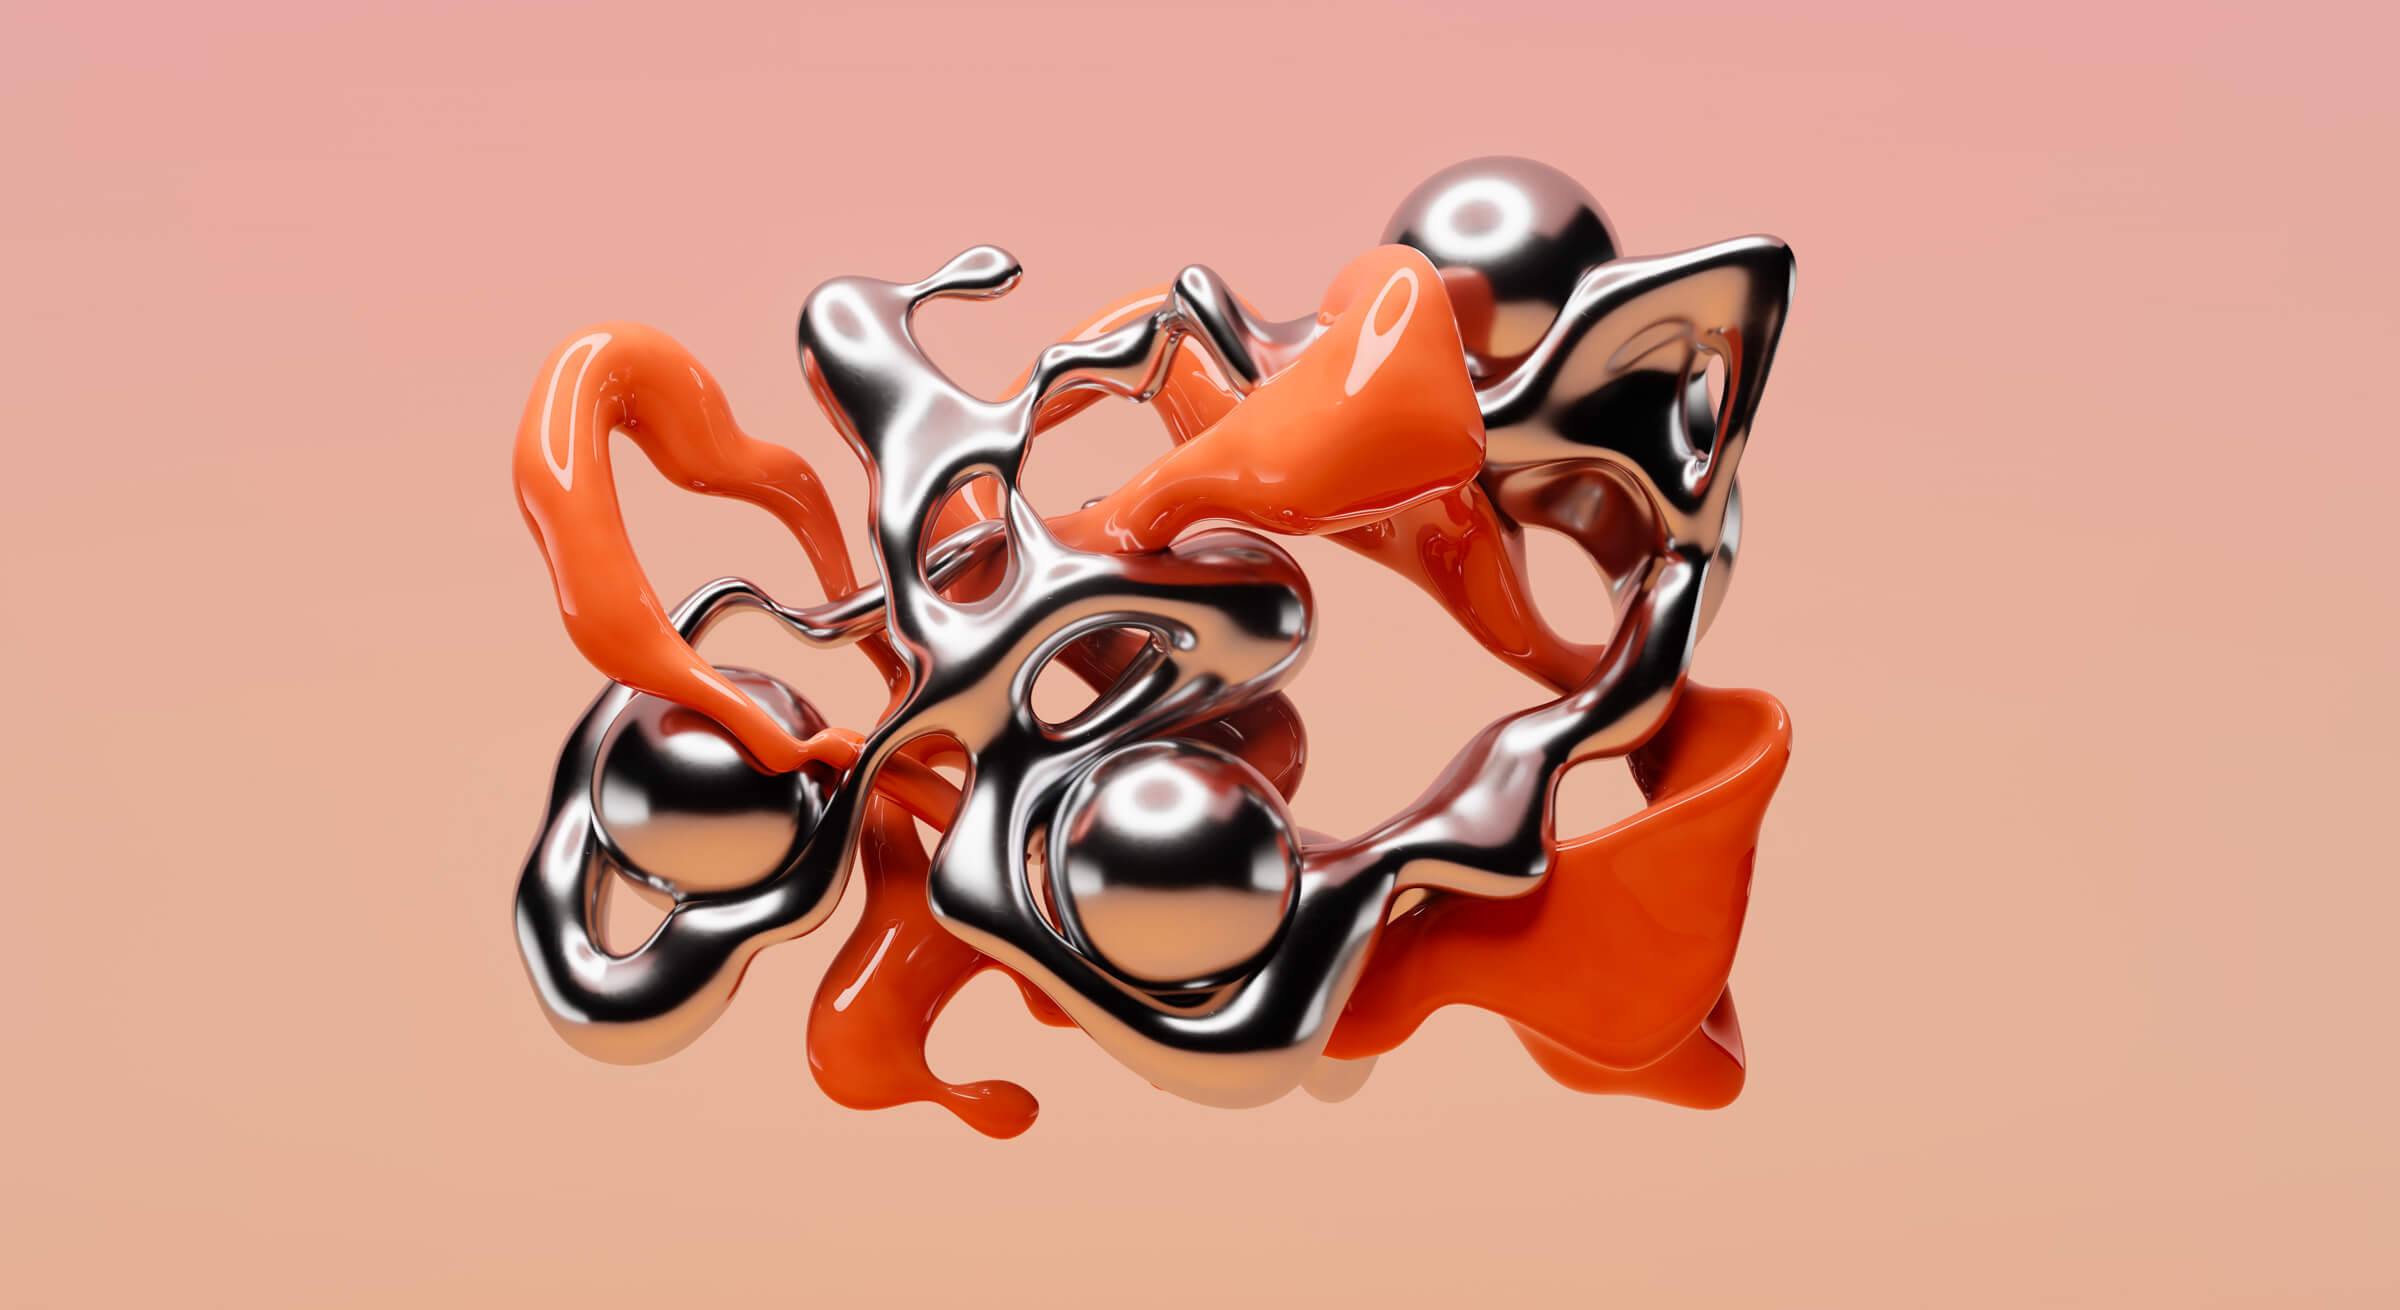 abstractionism_orange_metal_wide